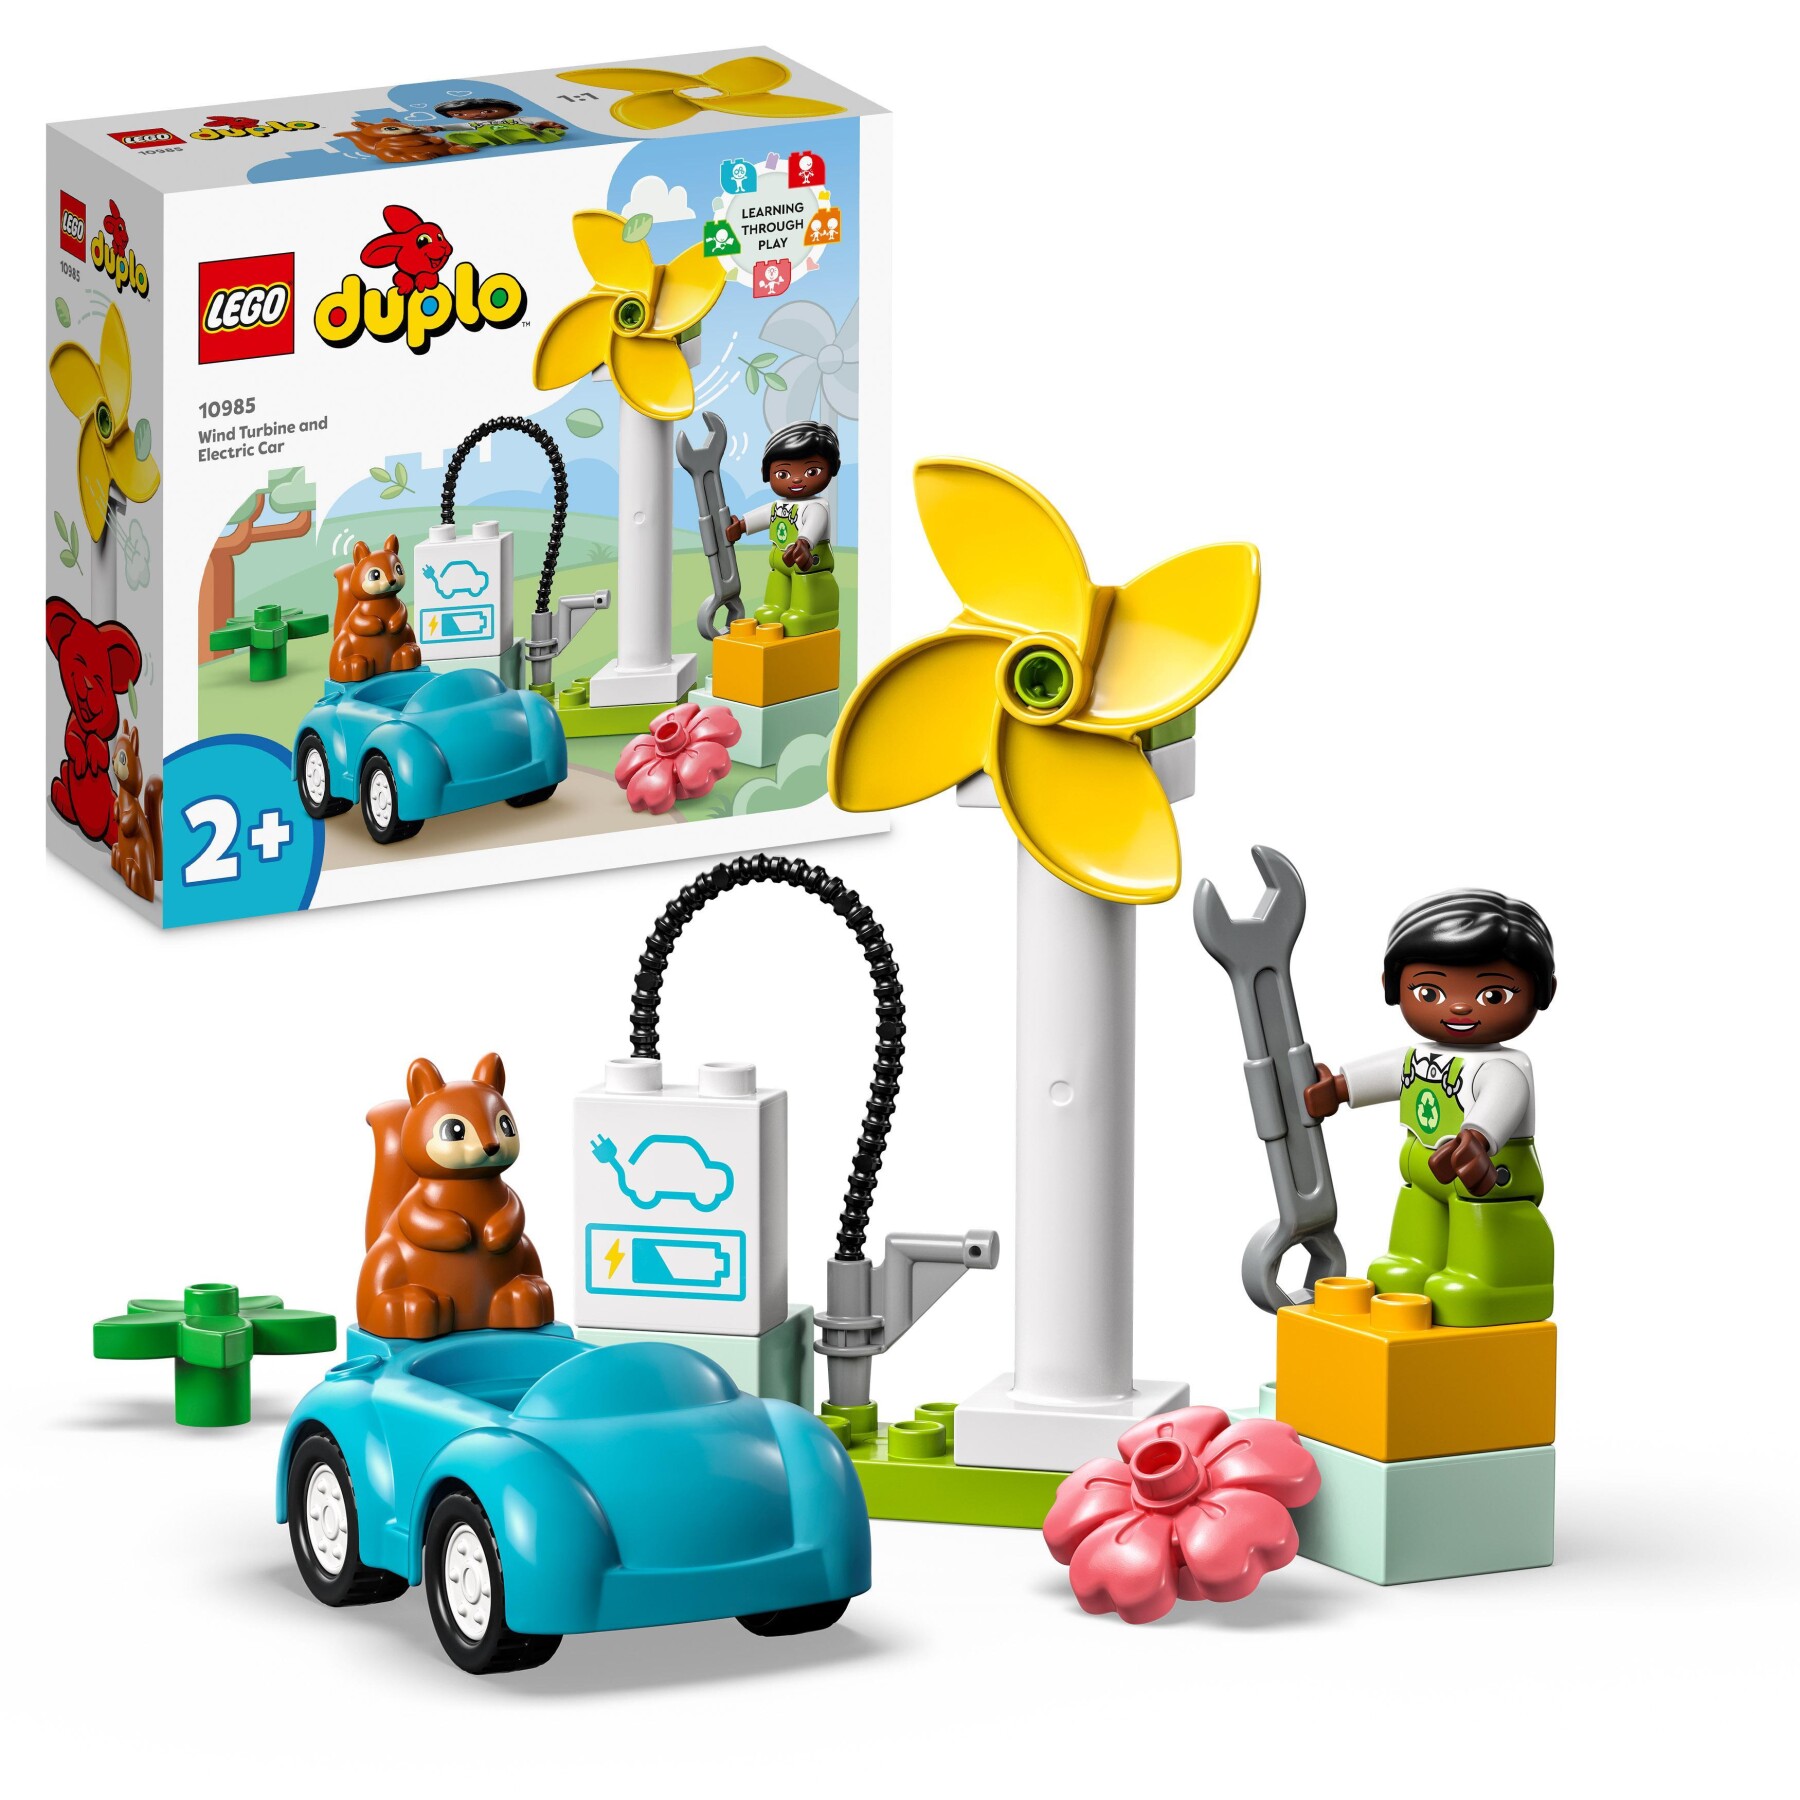 Lego duplo town 10985 turbina eolica e auto elettrica, macchina giocattolo,  giochi educativi per bambini, set vita sostenibile - Toys Center